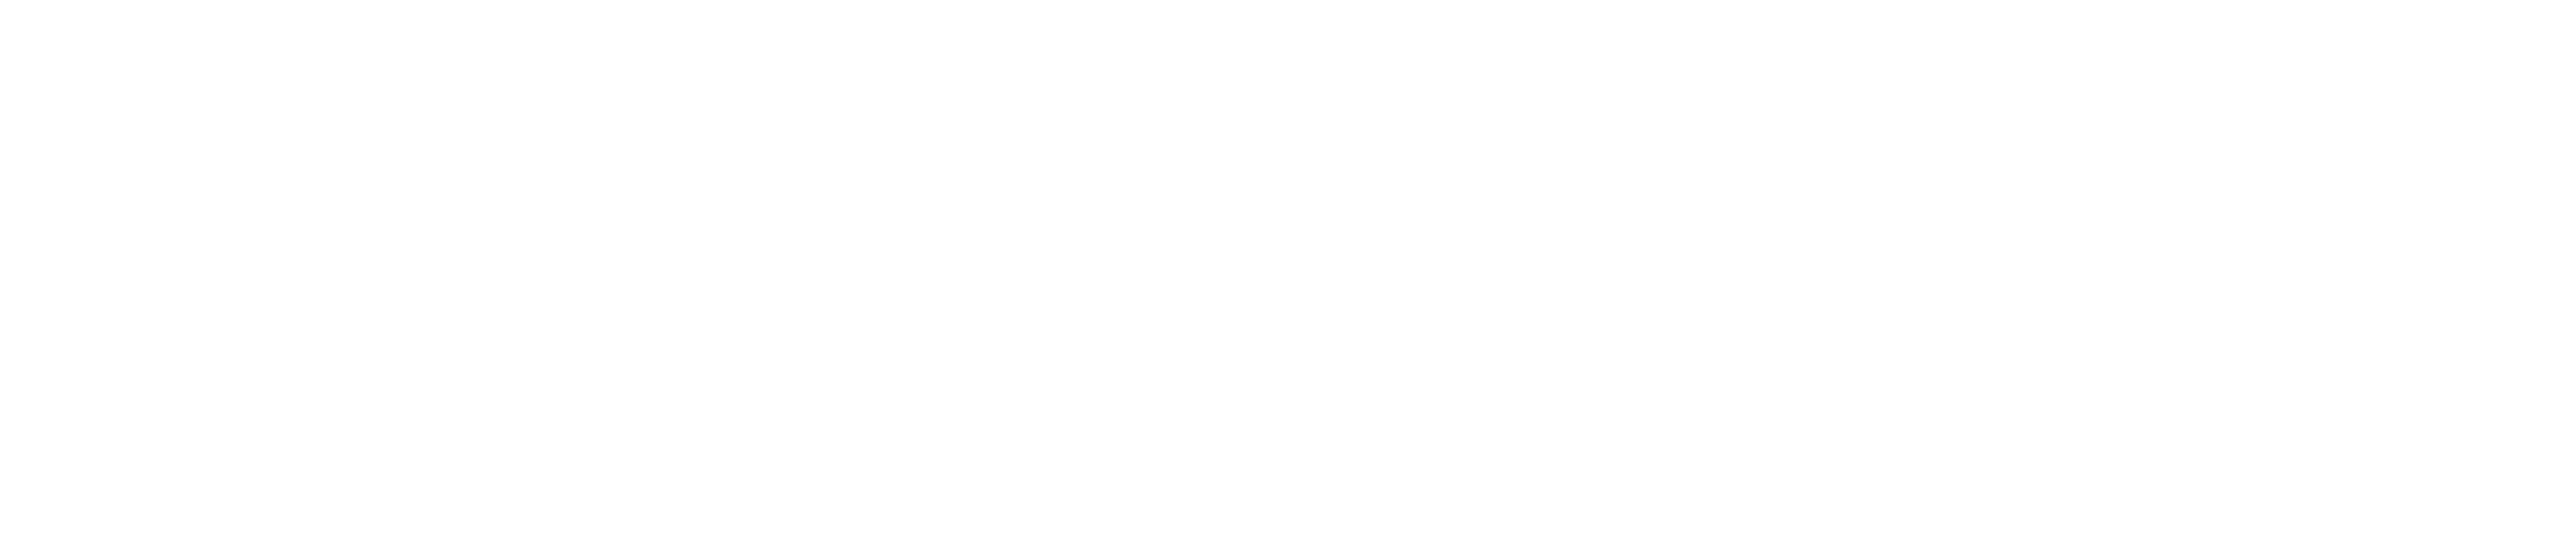 Overlagsen Logo, white text set in Helvetica